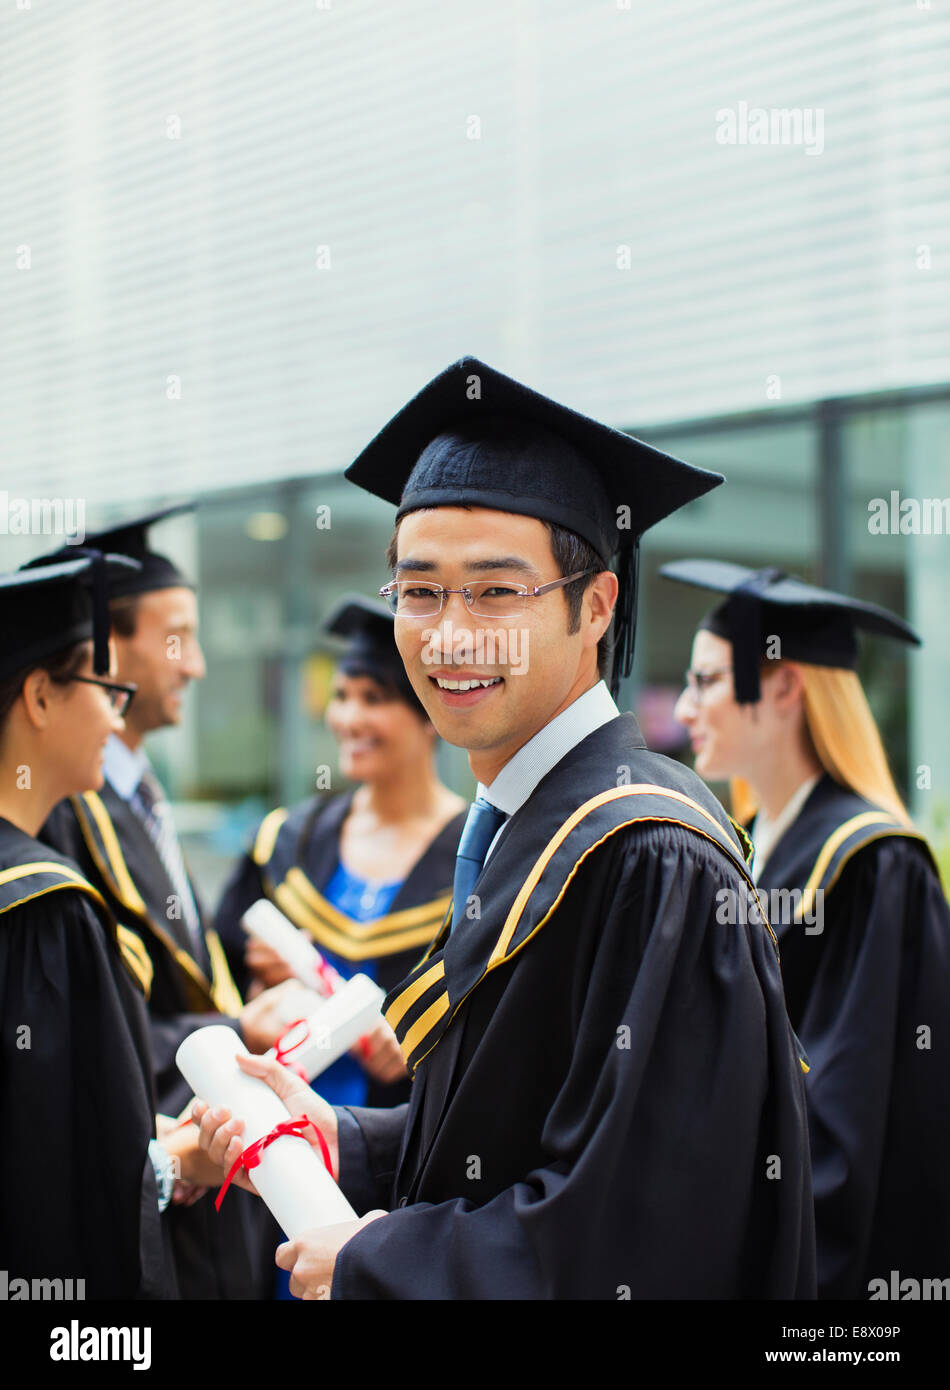 Share 120+ amu graduation cap and gown - camera.edu.vn